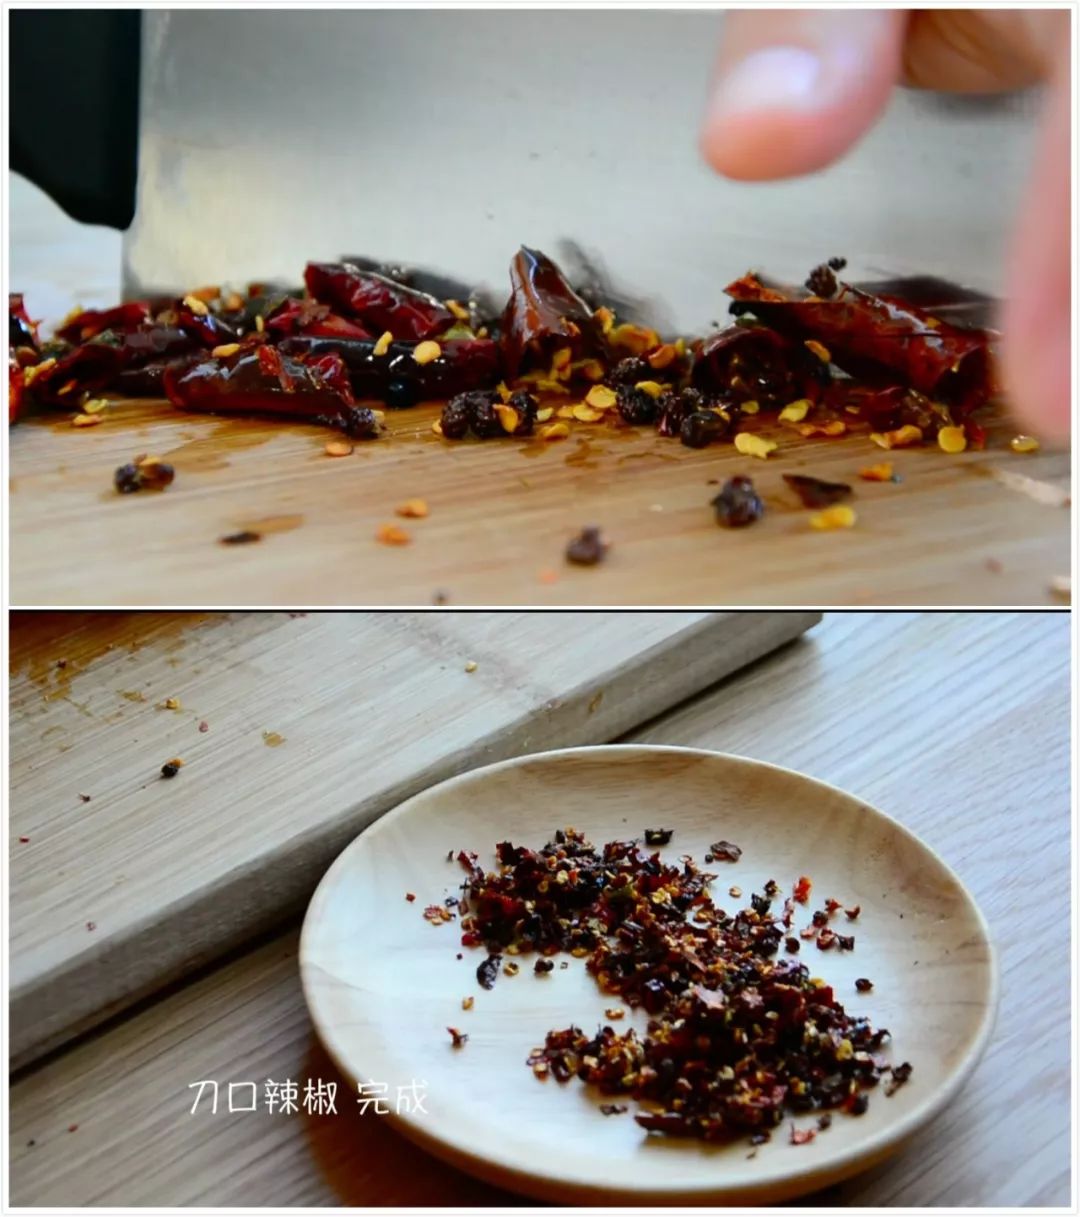 制作刀口辣椒:炒好的花椒辣椒趁热切碎,刀口辣椒制作完成.